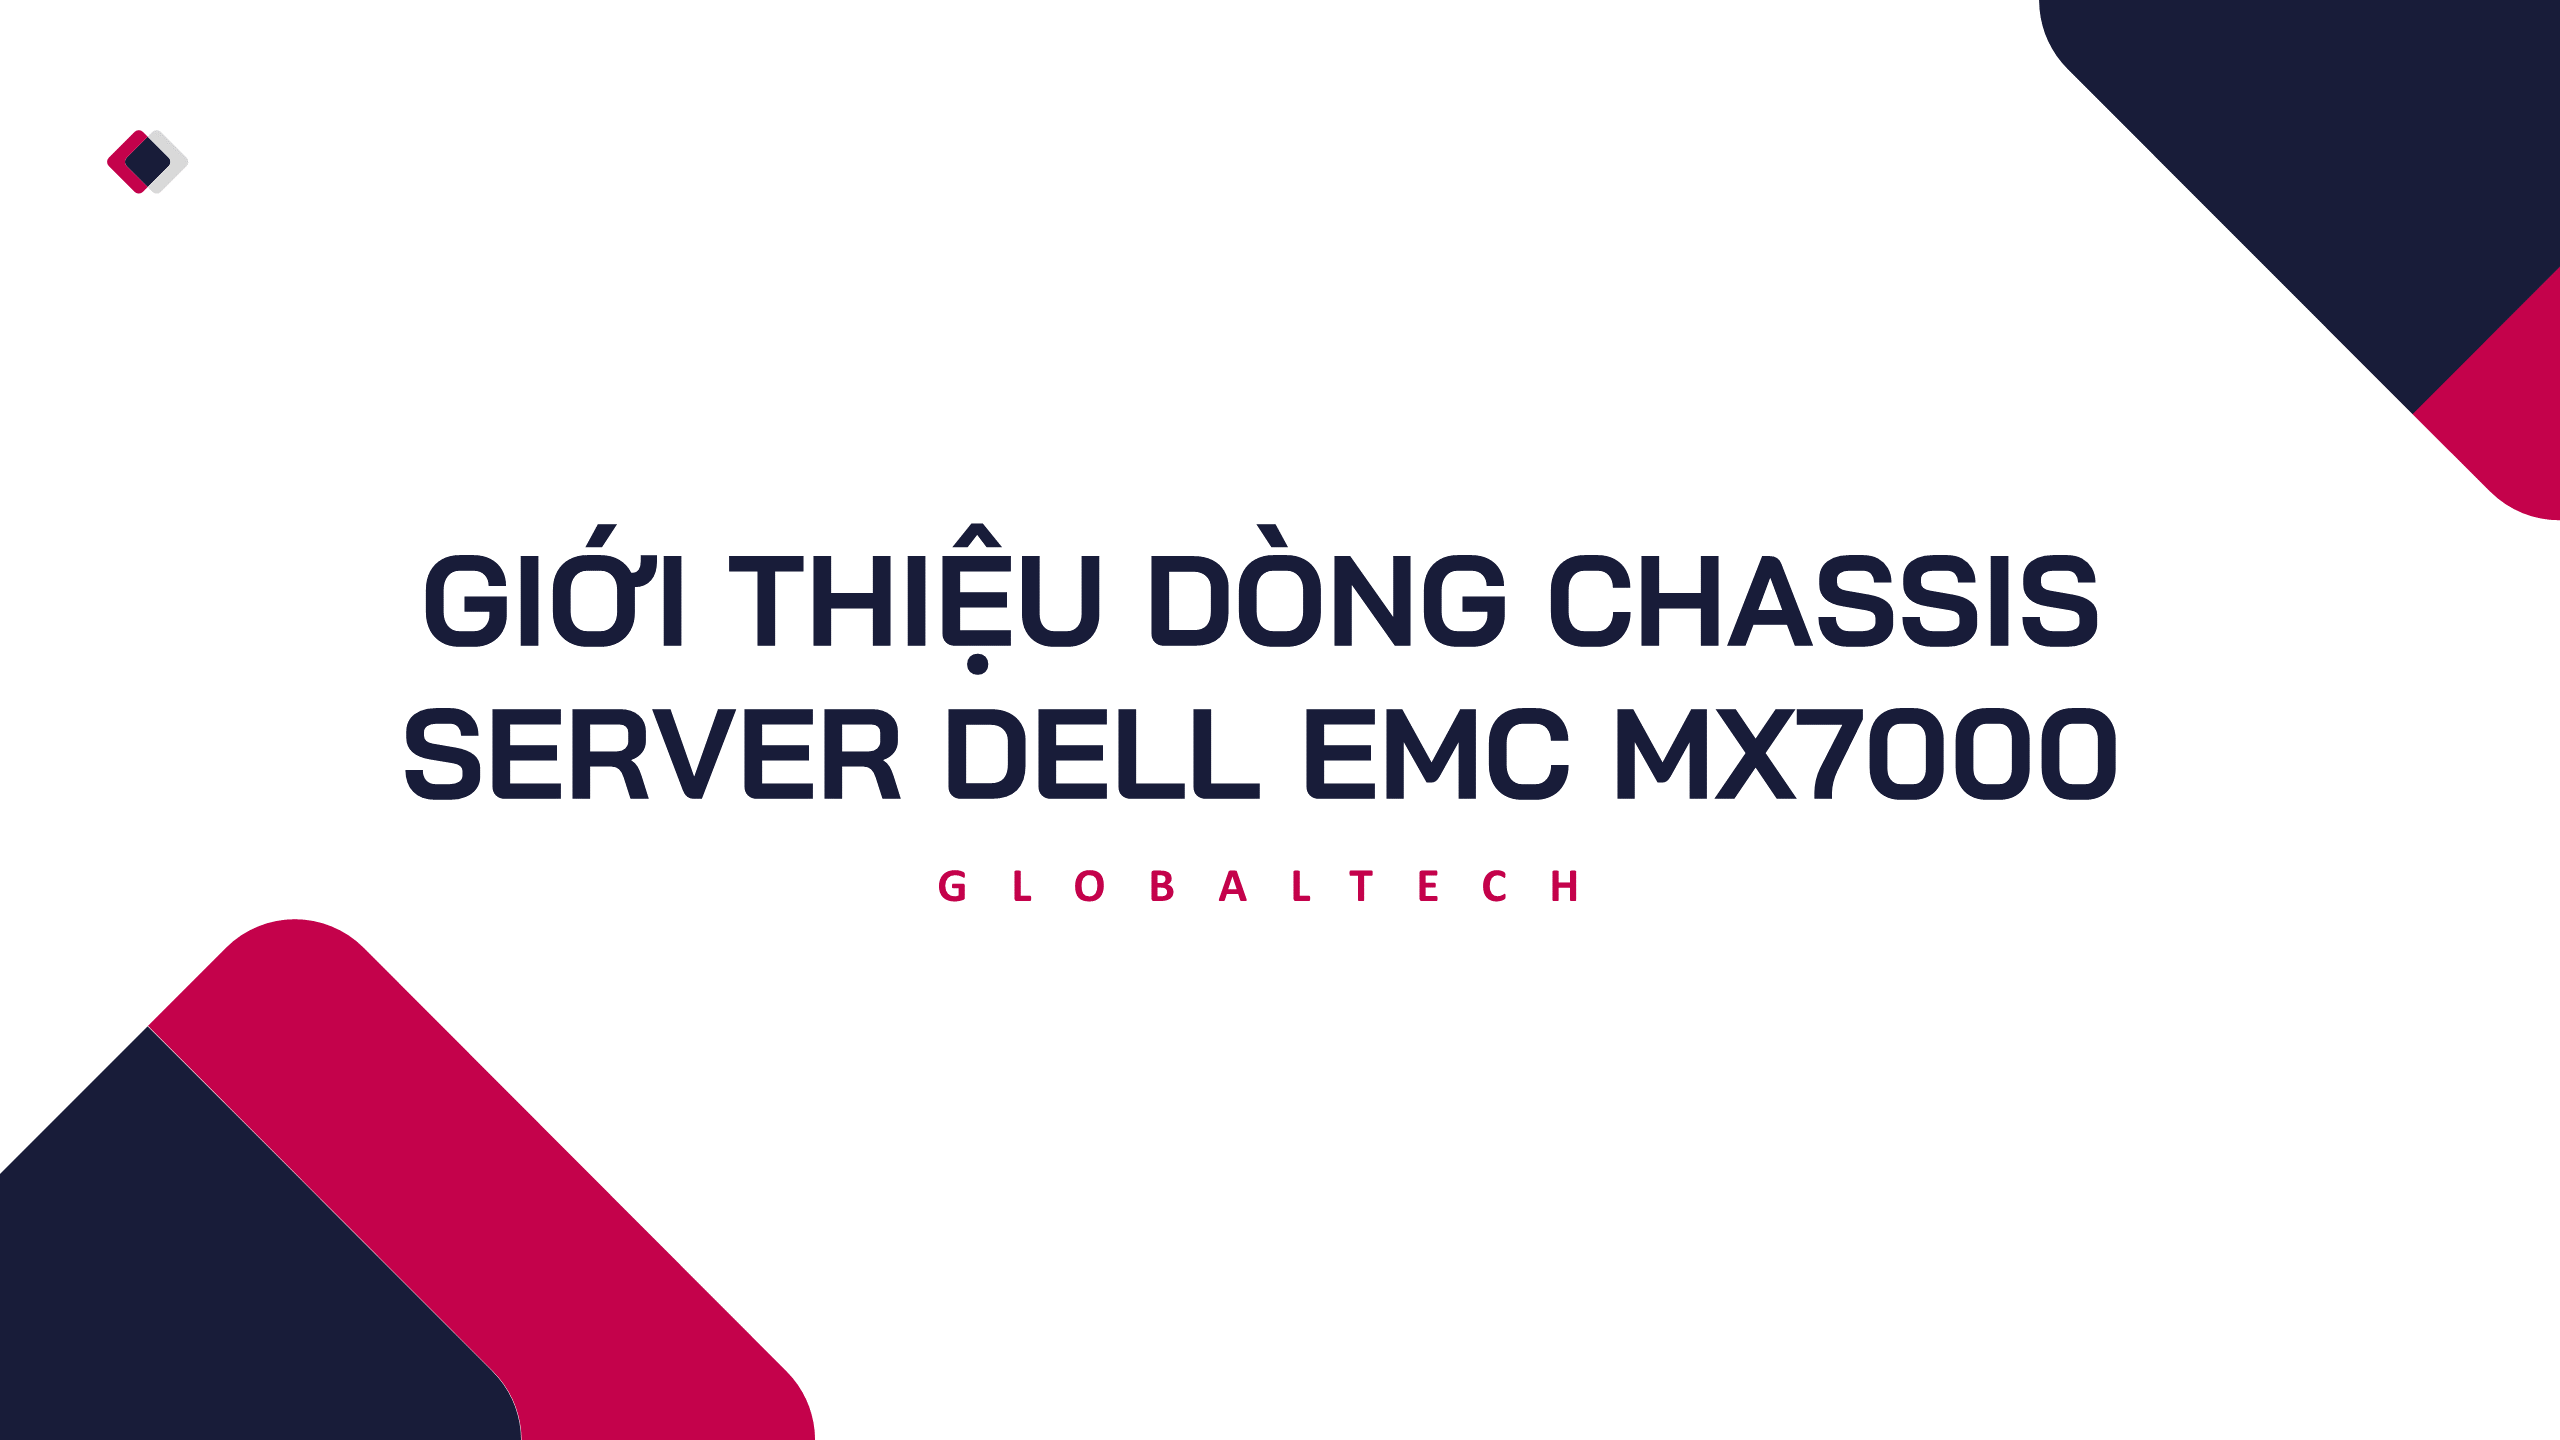 GIỚI THIỆU DÒNG CHASSIS SERVER DELL EMC MX7000